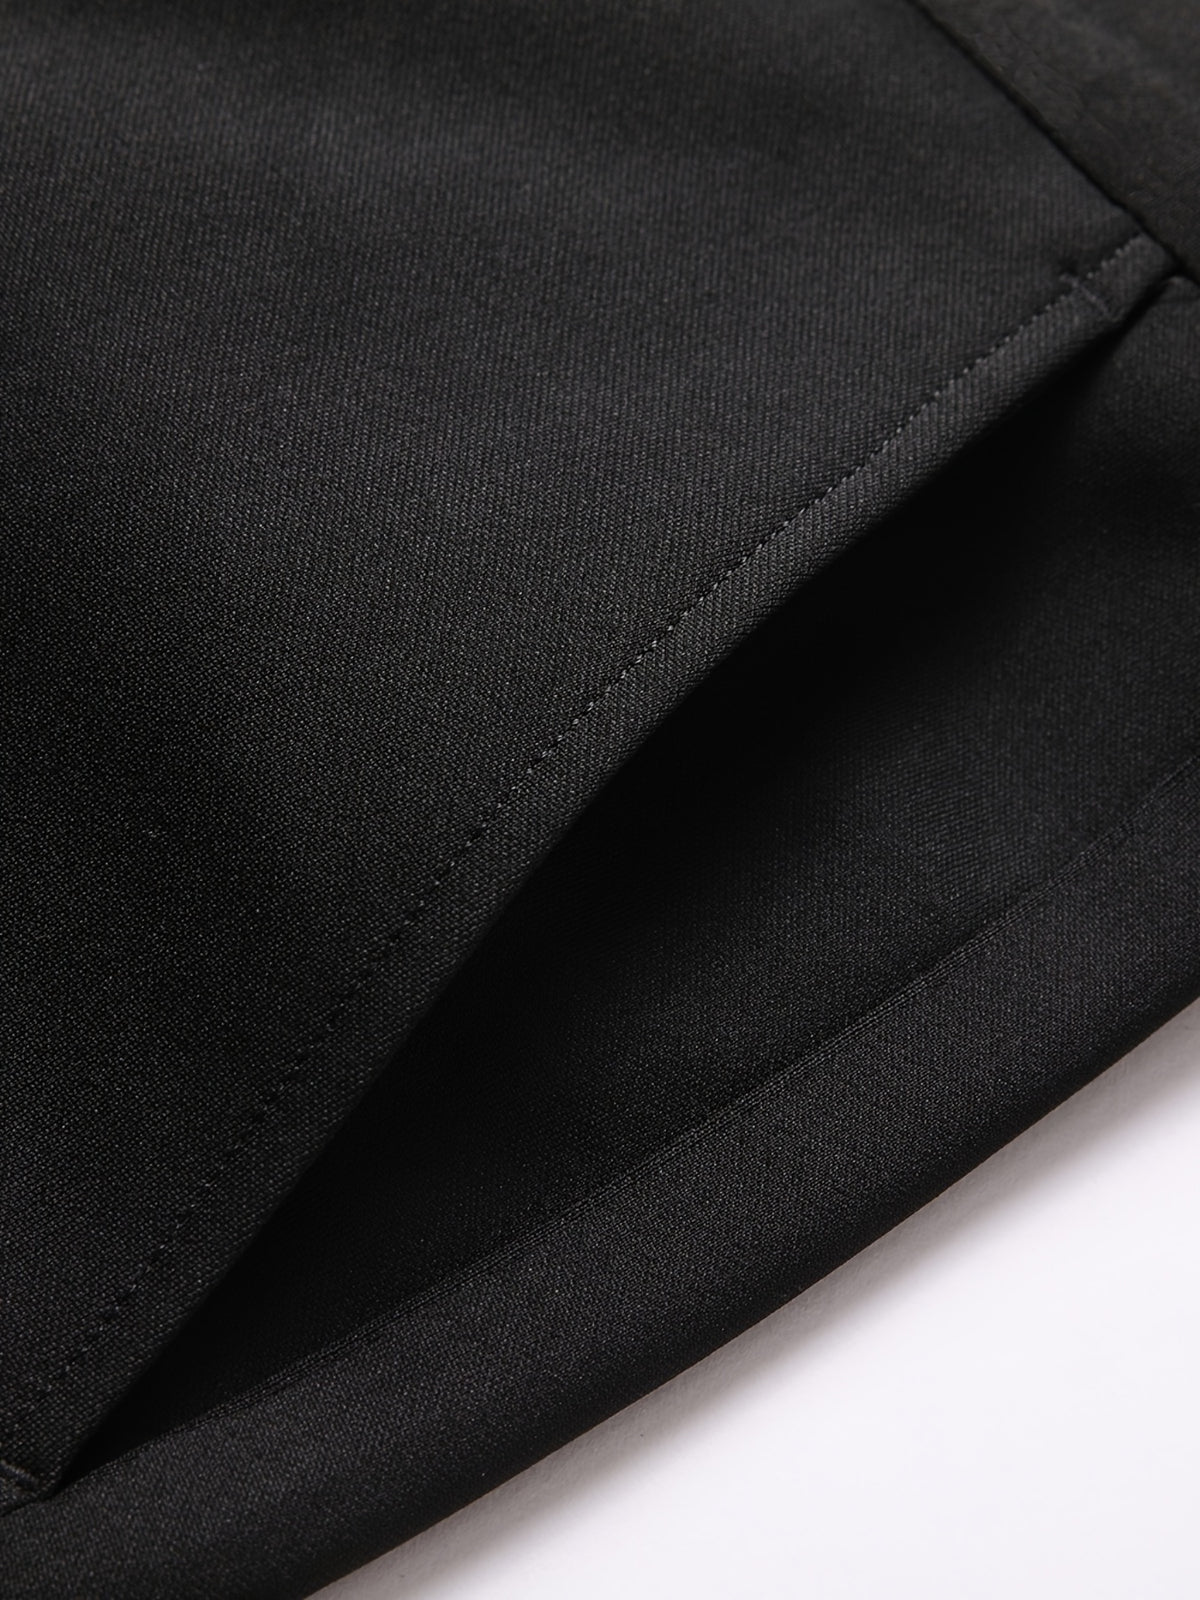 a close up of a black suit pants